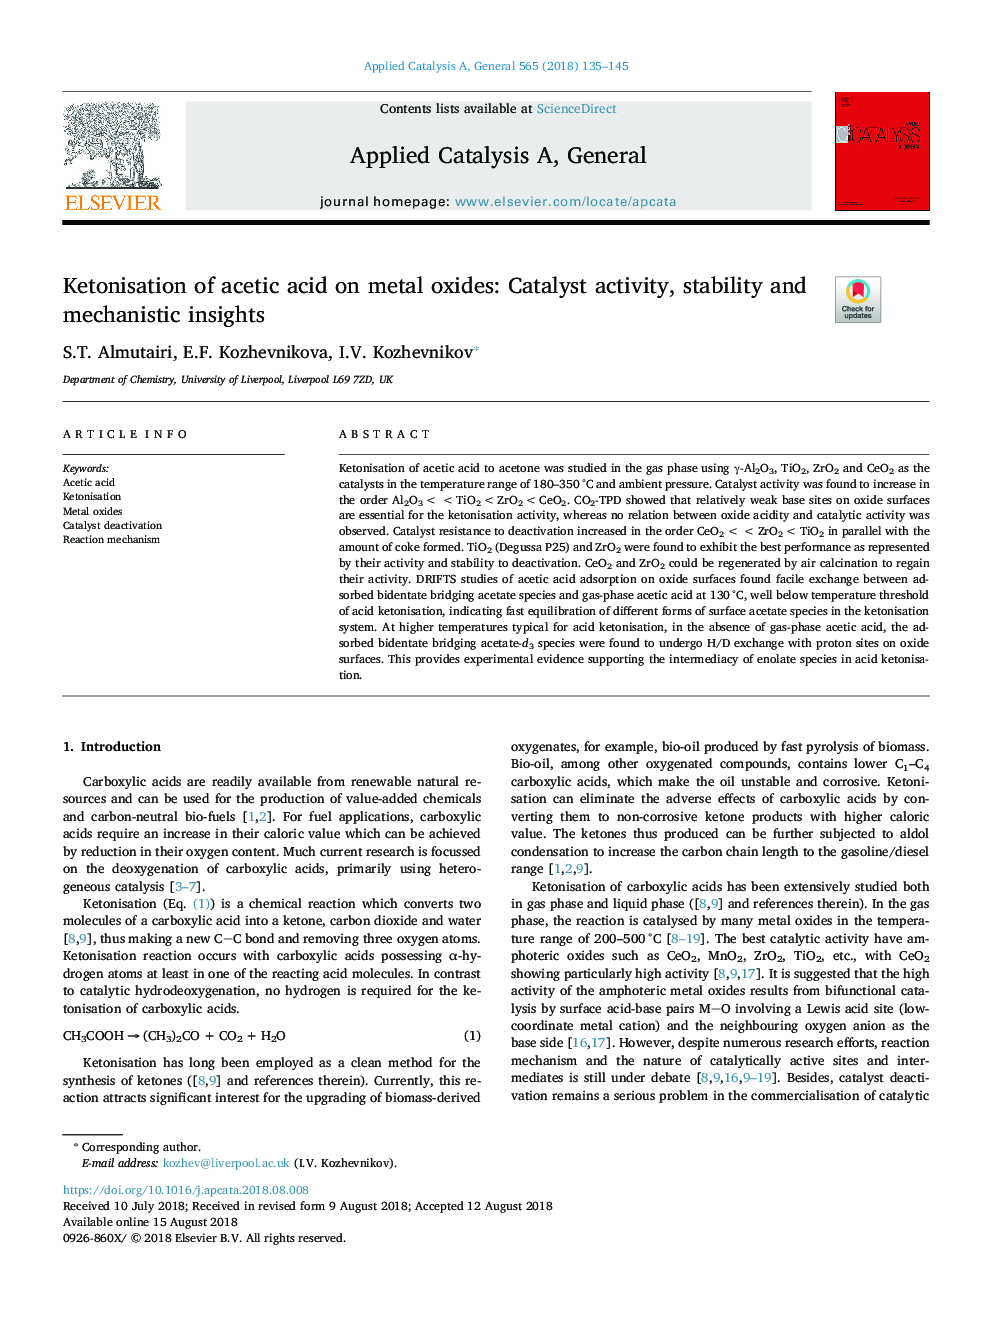 کتونیزاسیون اسید استیک بر روی اکسید فلزی: فعالیت کاتالیست، ثبات و بینش مکانیکی